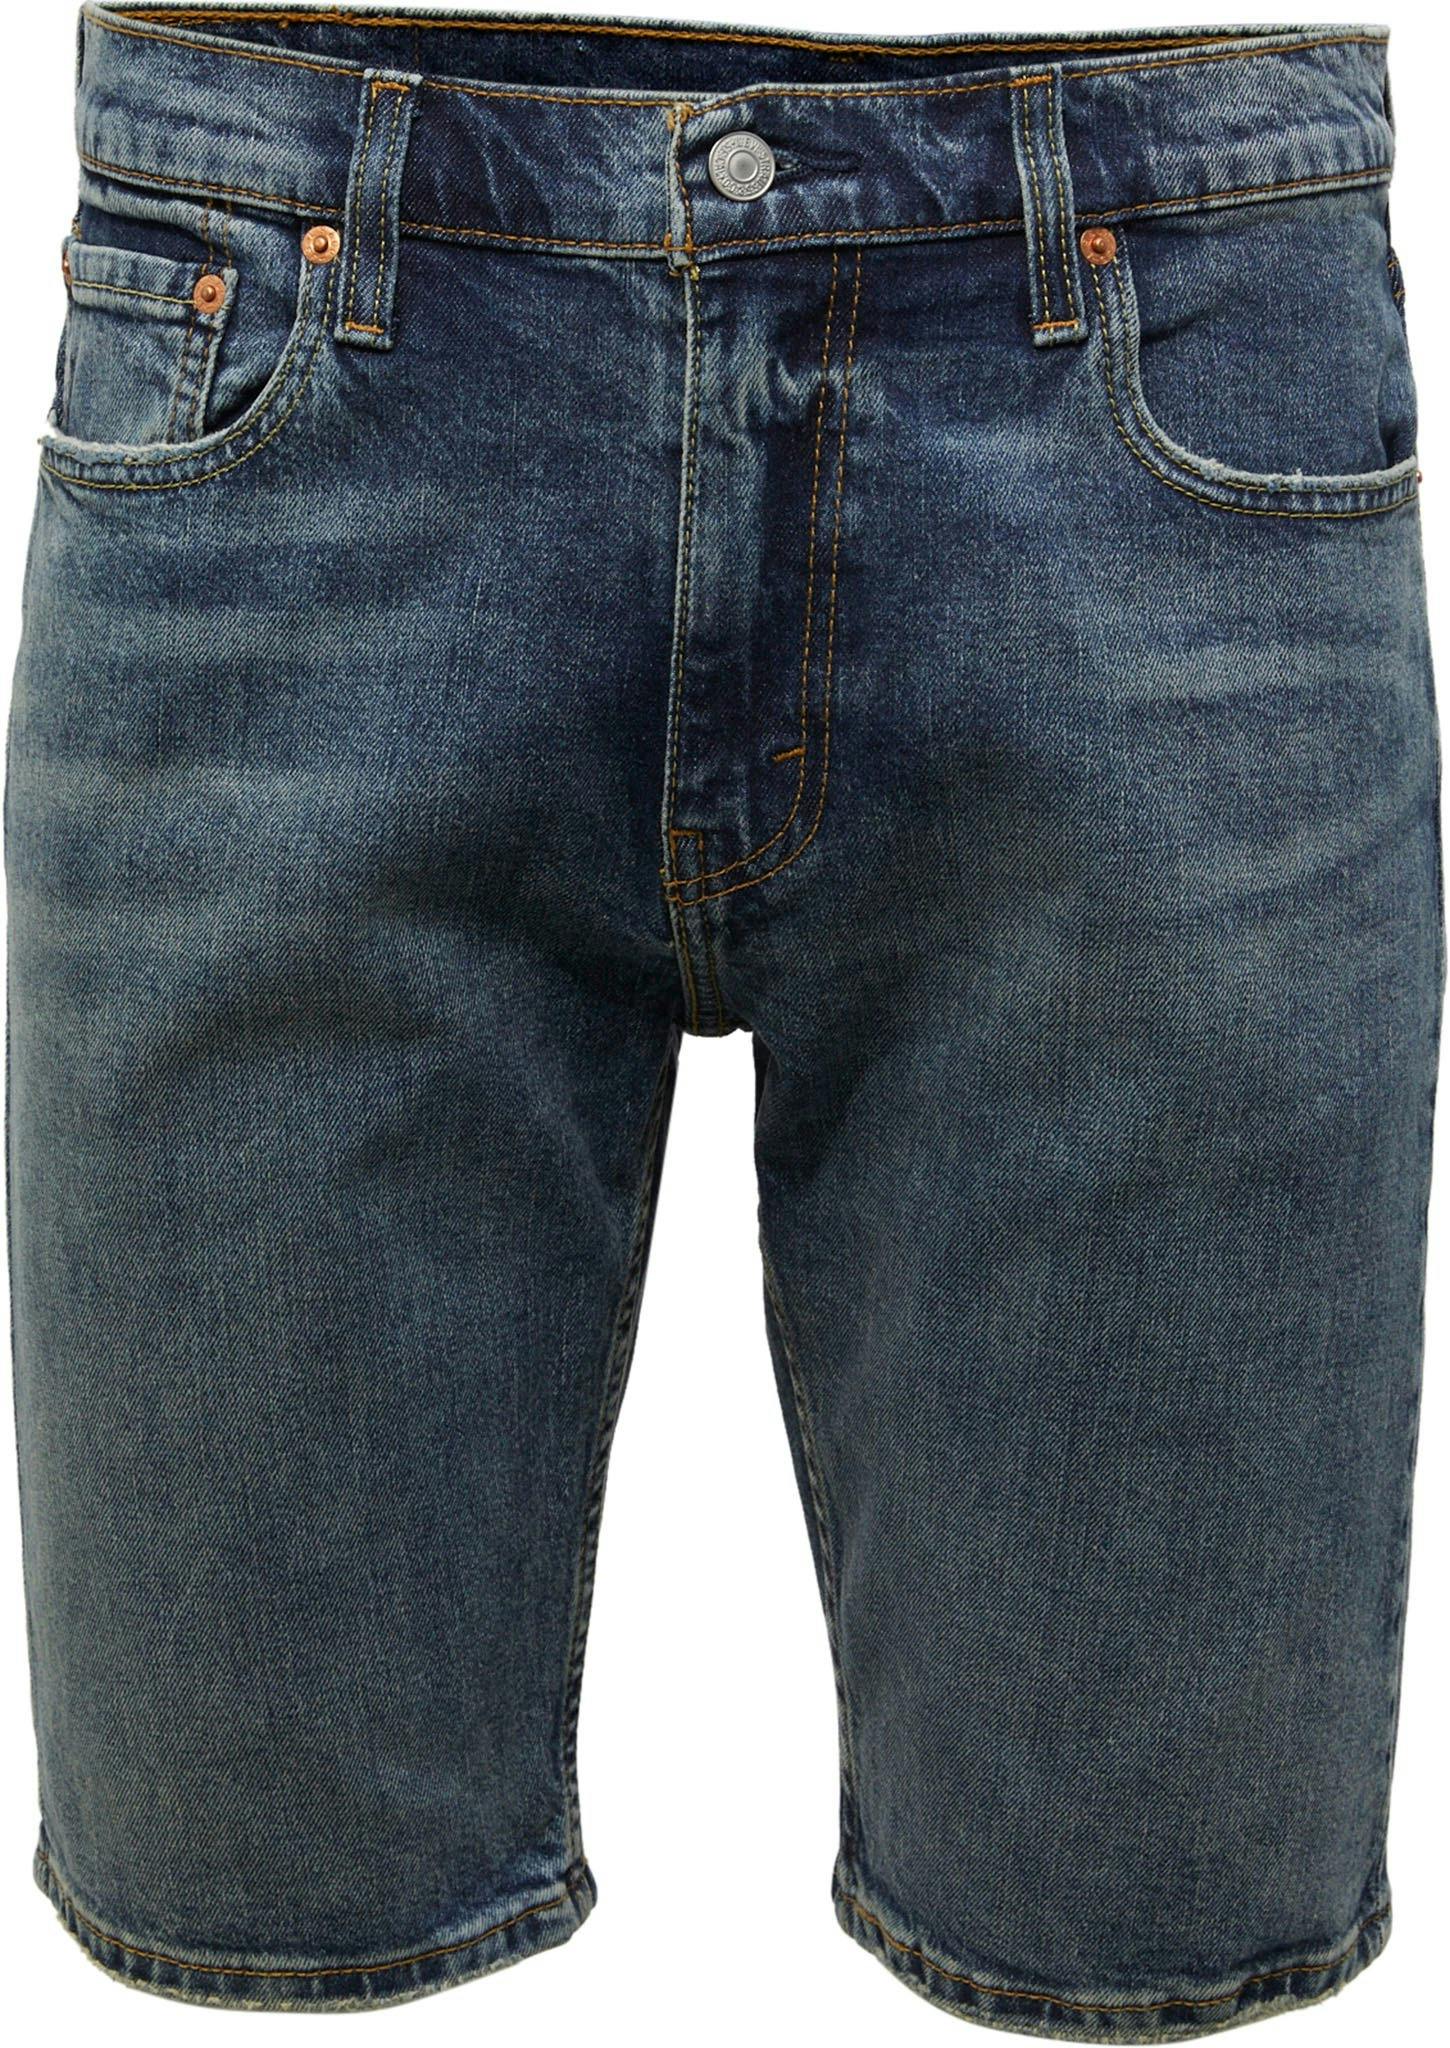 Image de produit pour Short en jean coupe ajustée 412 - Homme